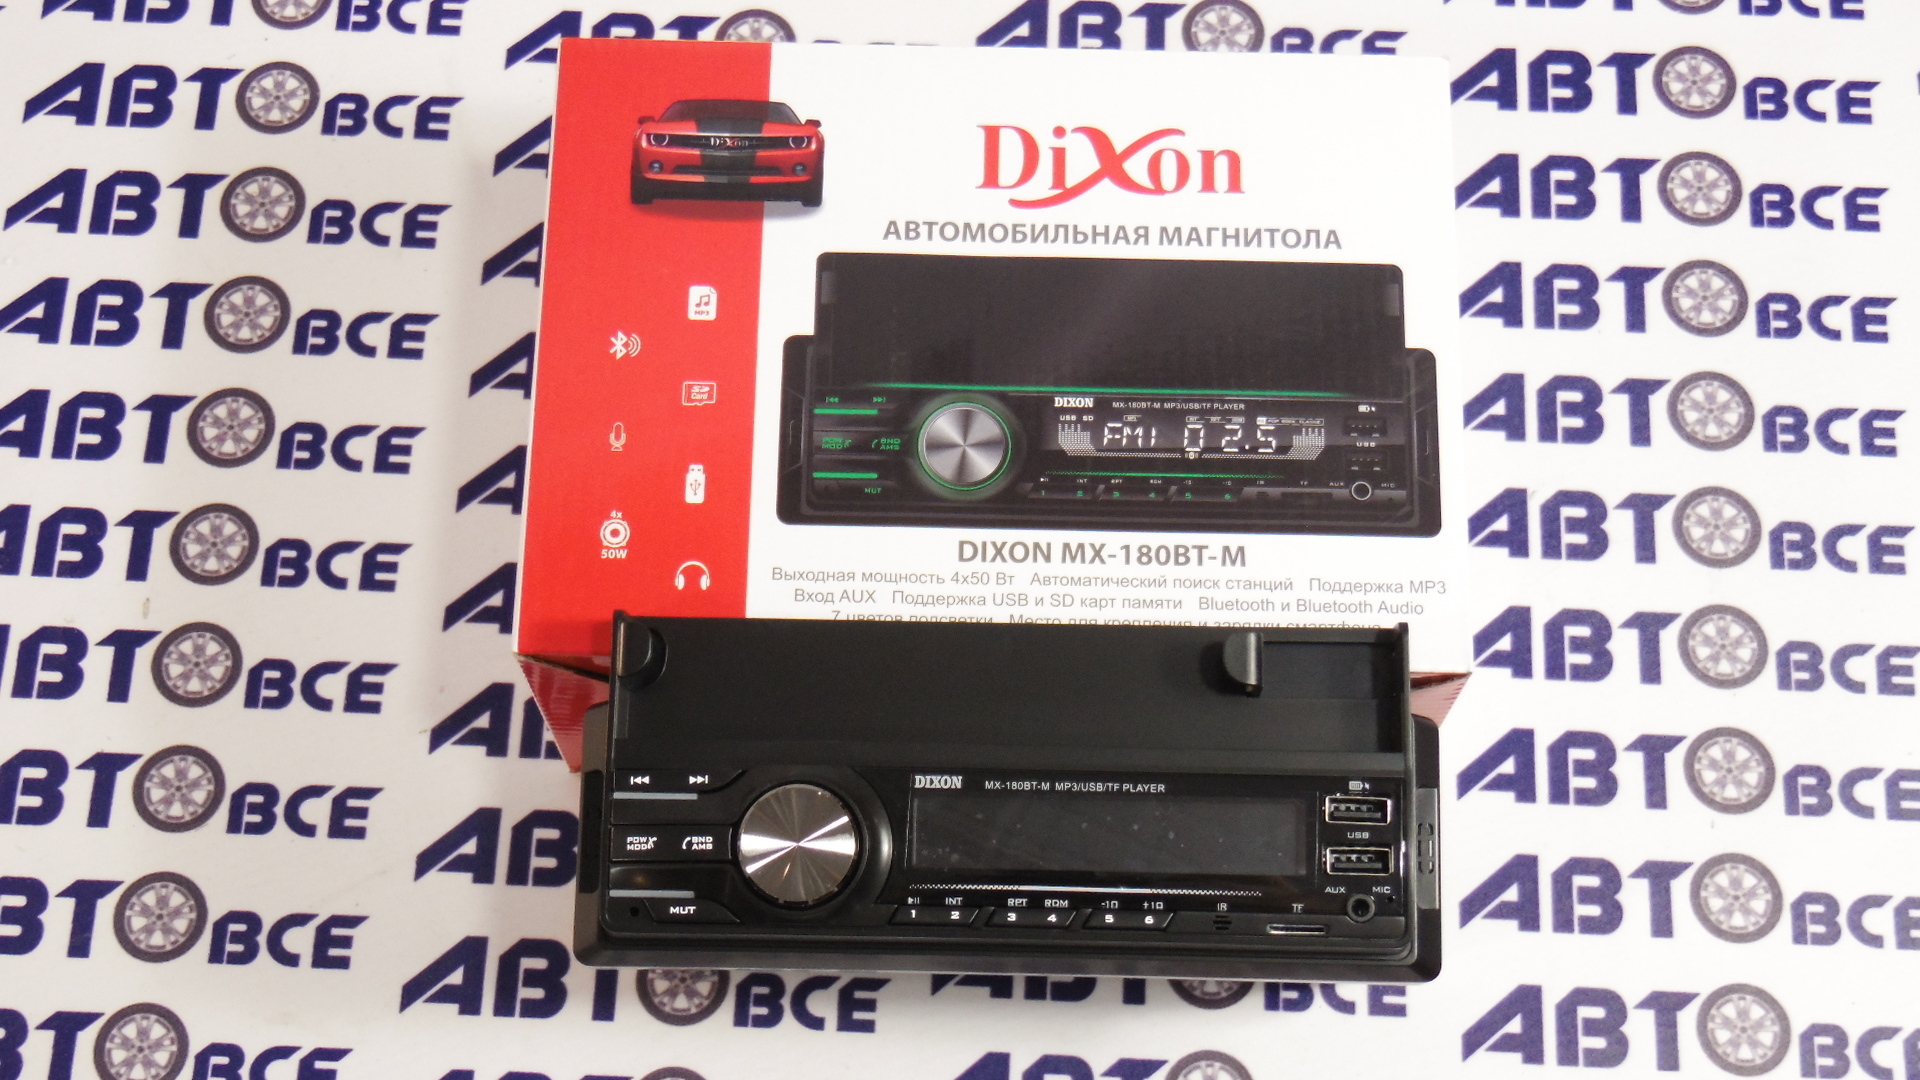 Автомагнитола MX-180BT-M DIXON